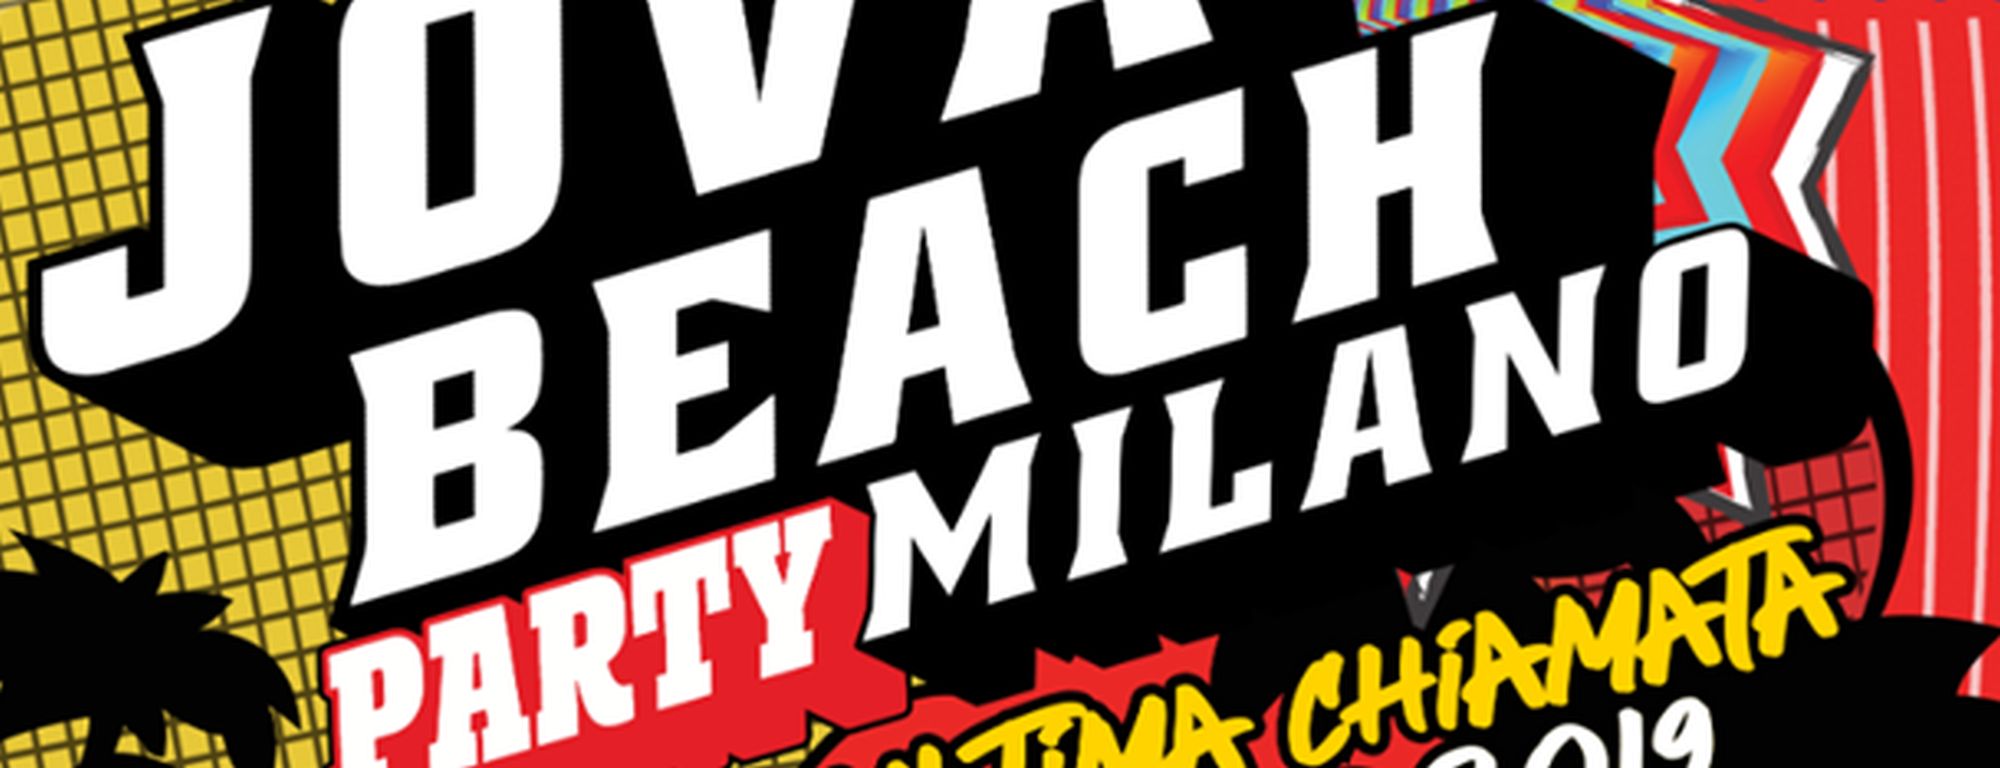 Jova Beach Party a Milano: tutto su data, biglietti e scaletta